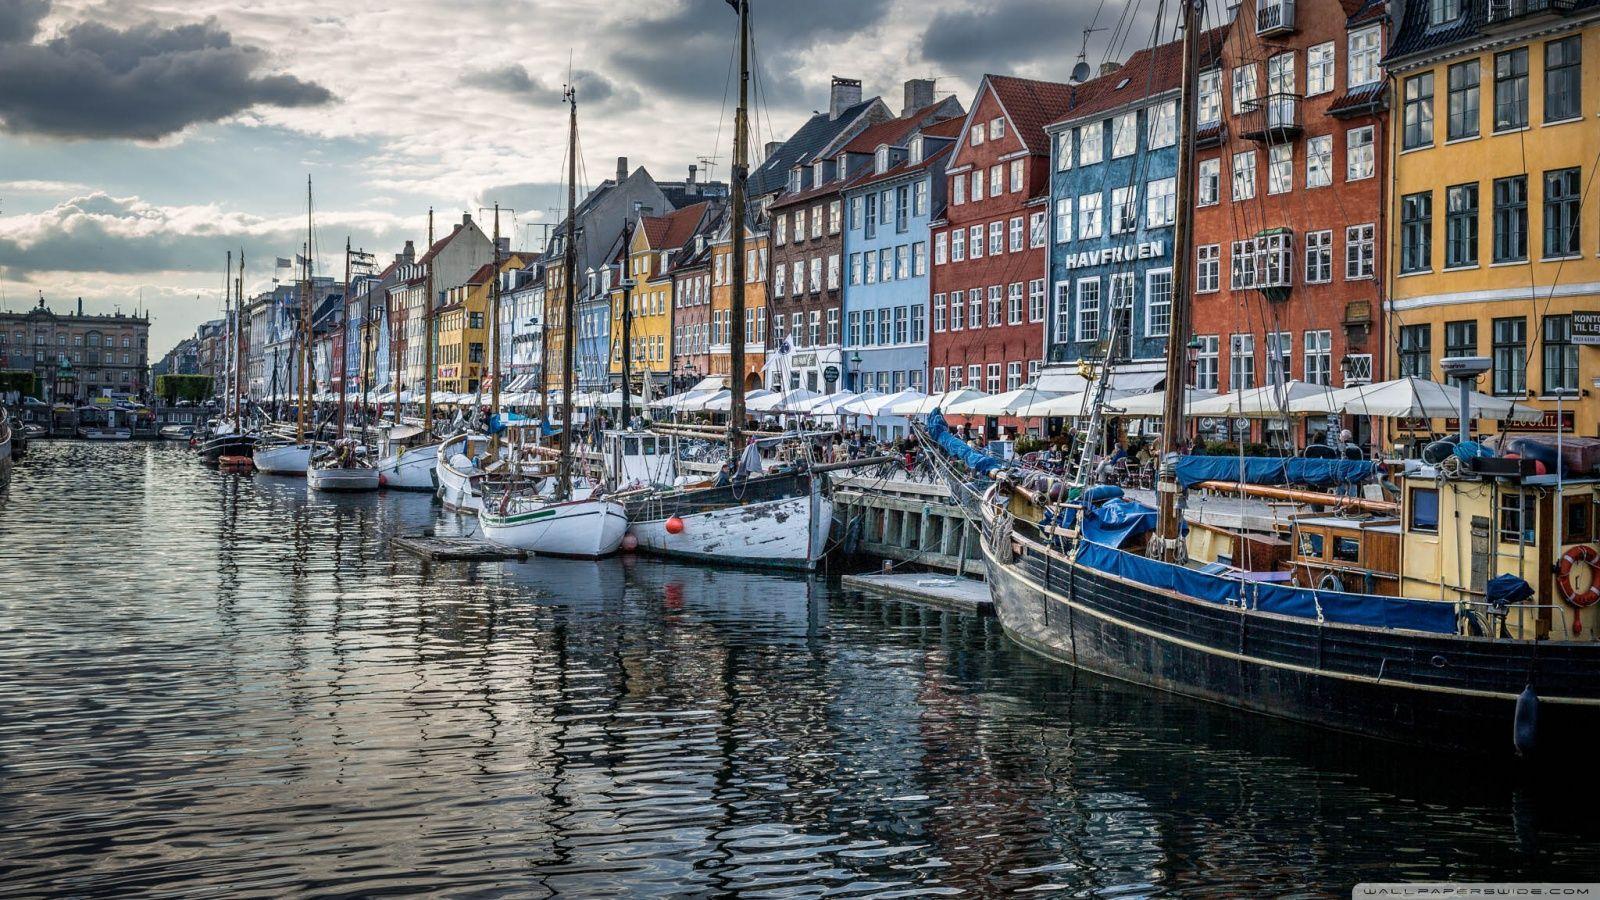 Copenhagen Denmark HD desktop wallpaper, Widescreen, High